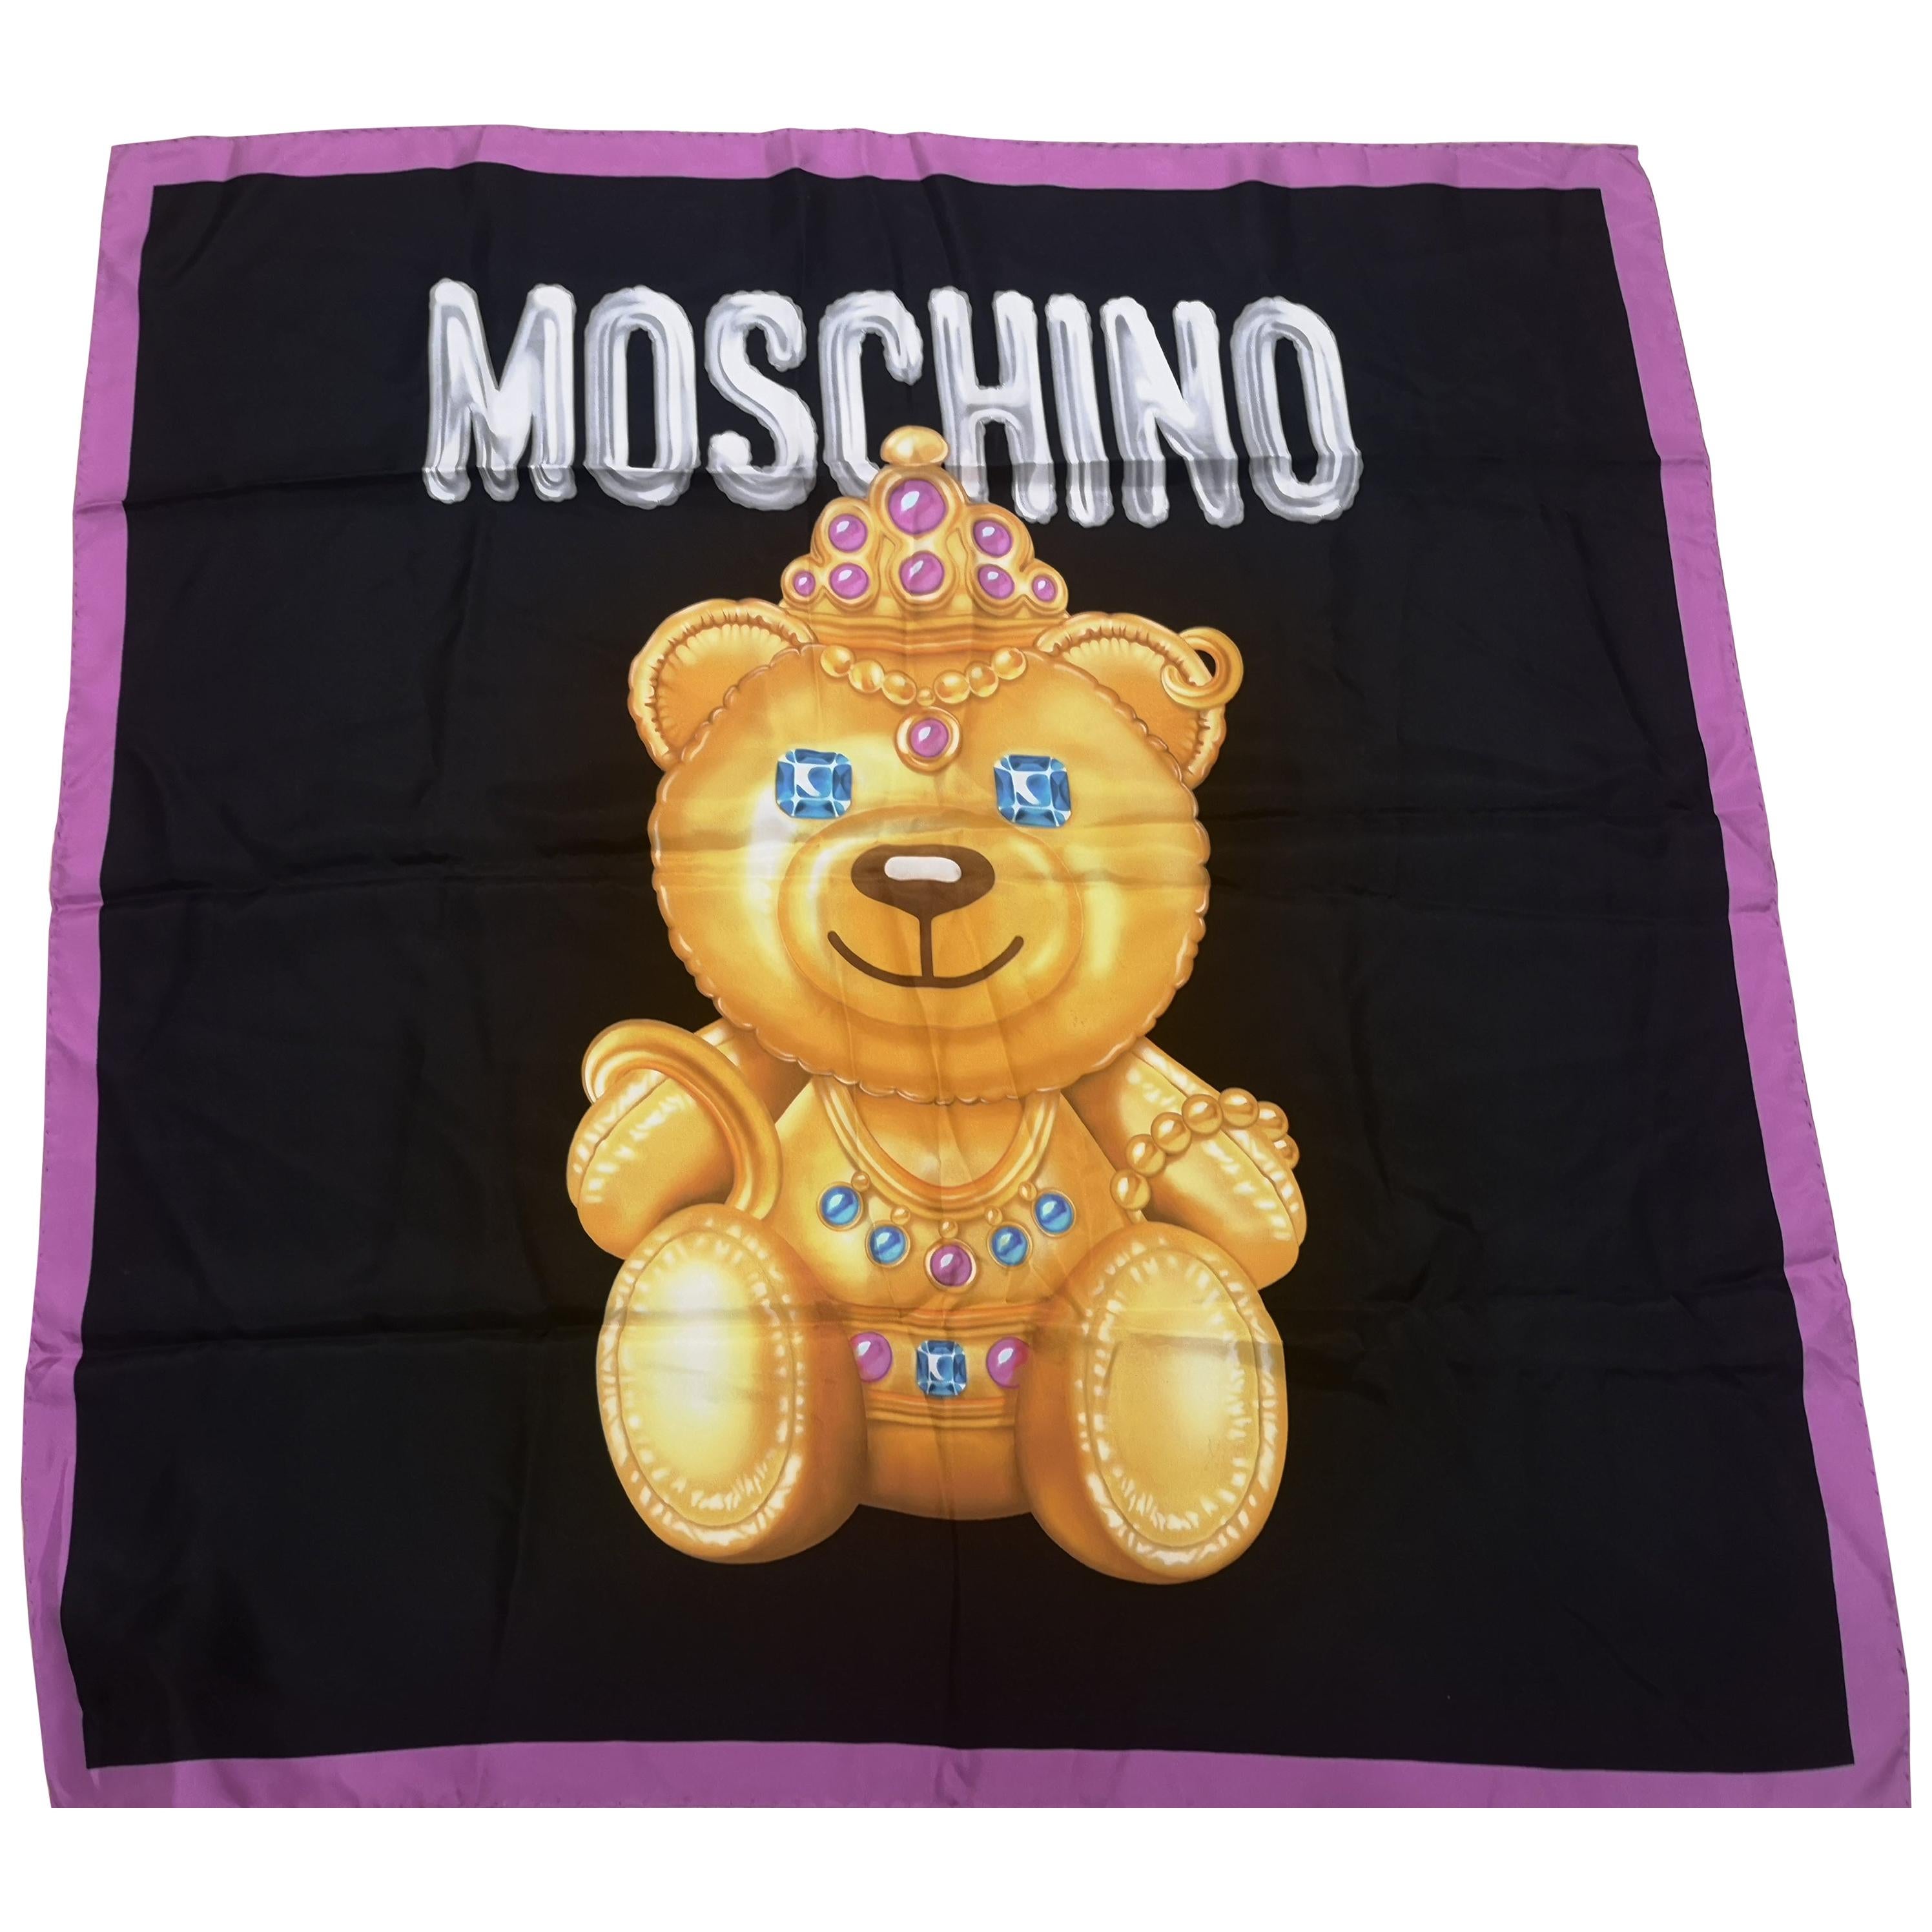 Moschino Bear - 2 For Sale on 1stDibs | moschino bear bag 